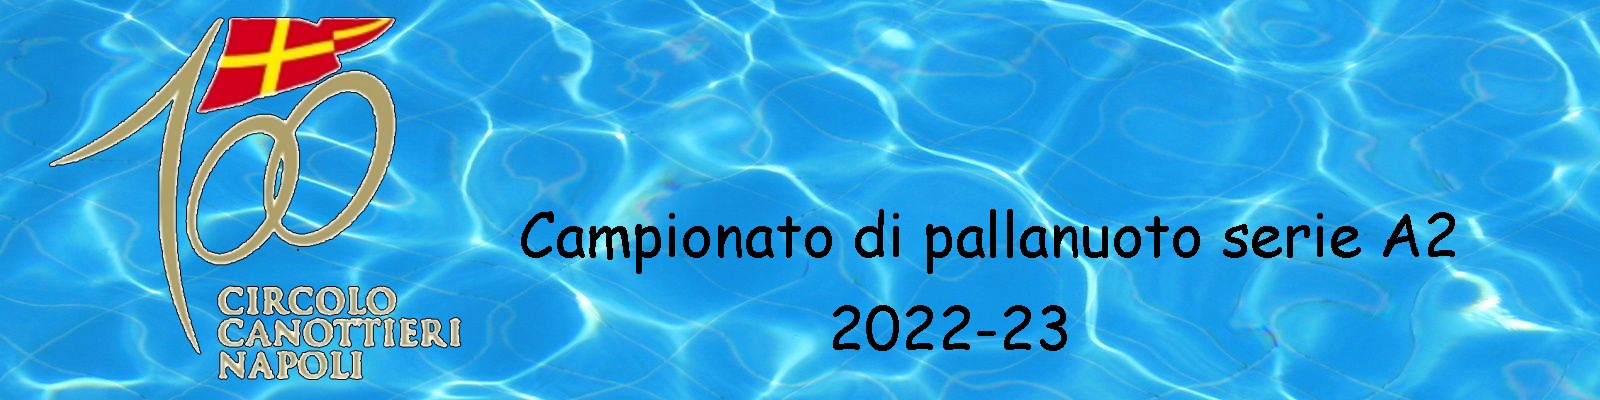 Canottieri 2022-23